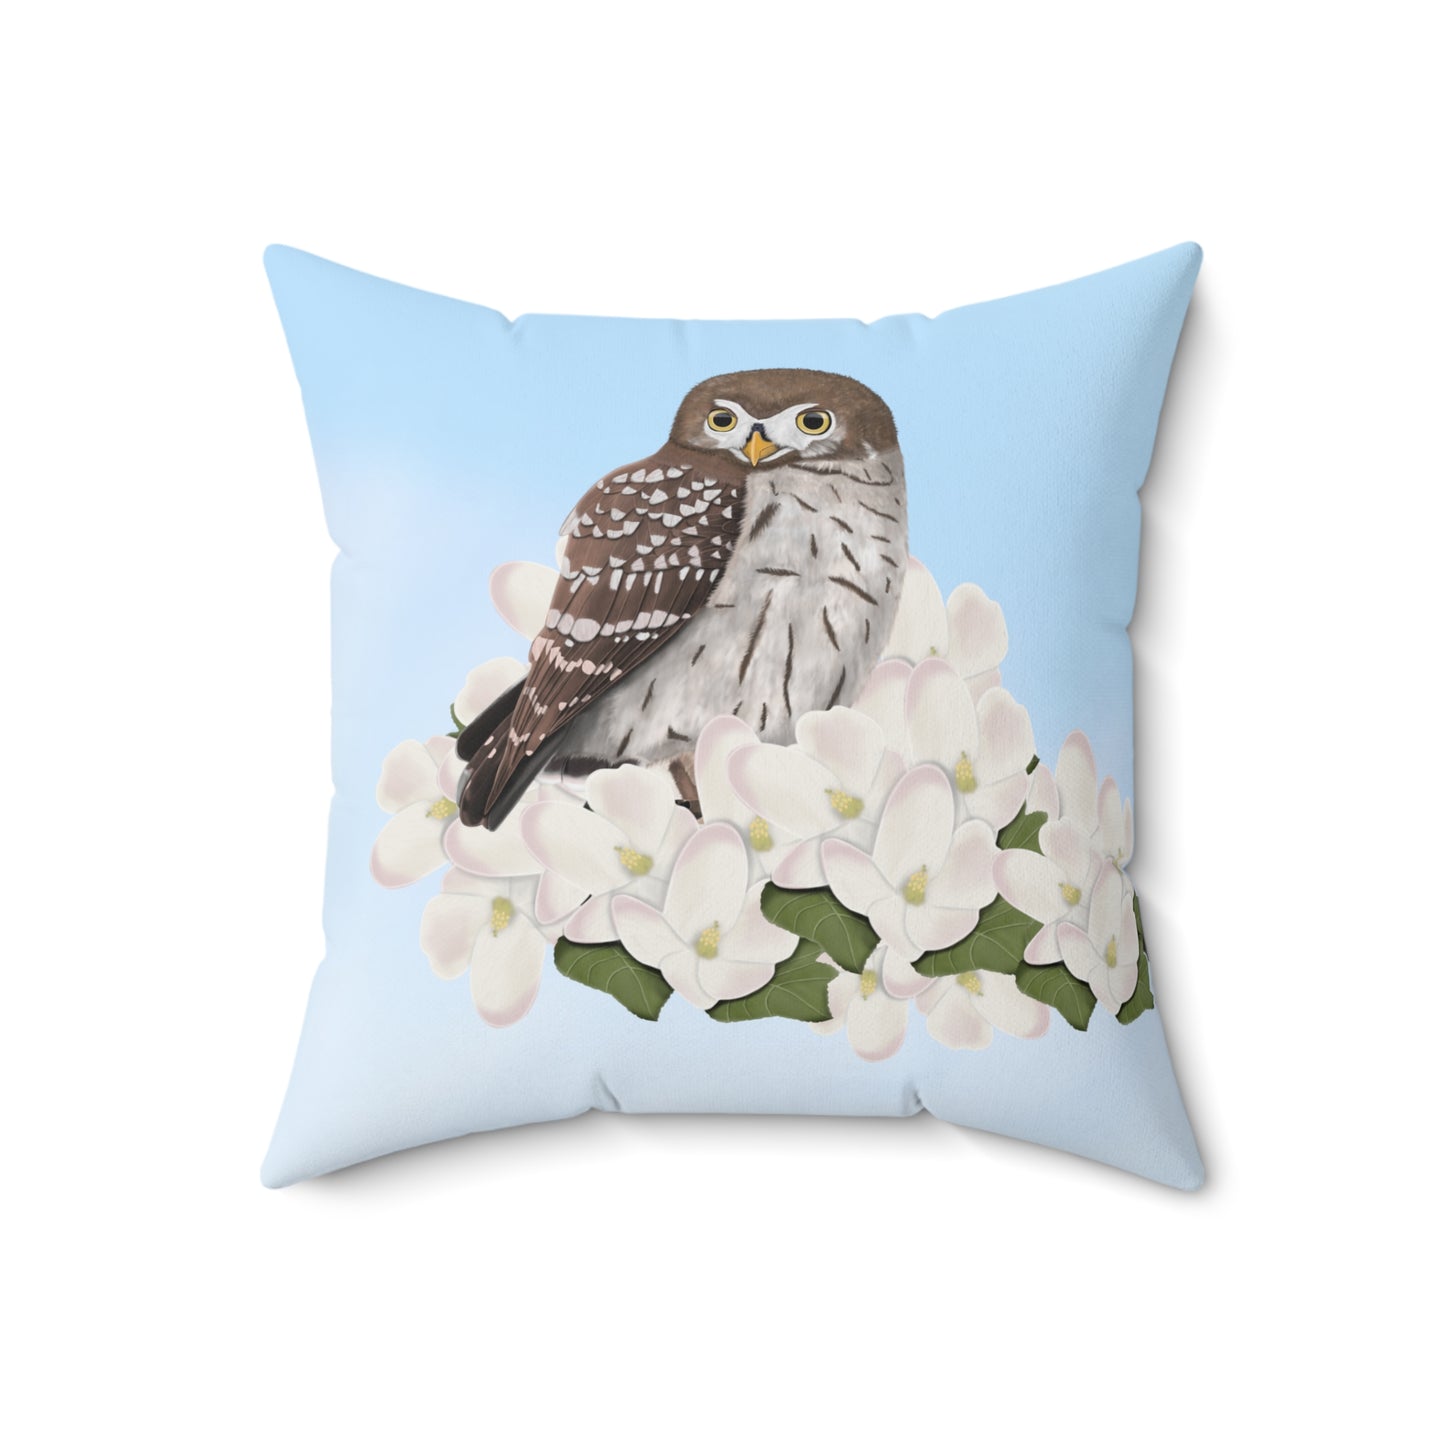 Little Owl and Apple Blossoms Bird Throw Pillow 18"x18"